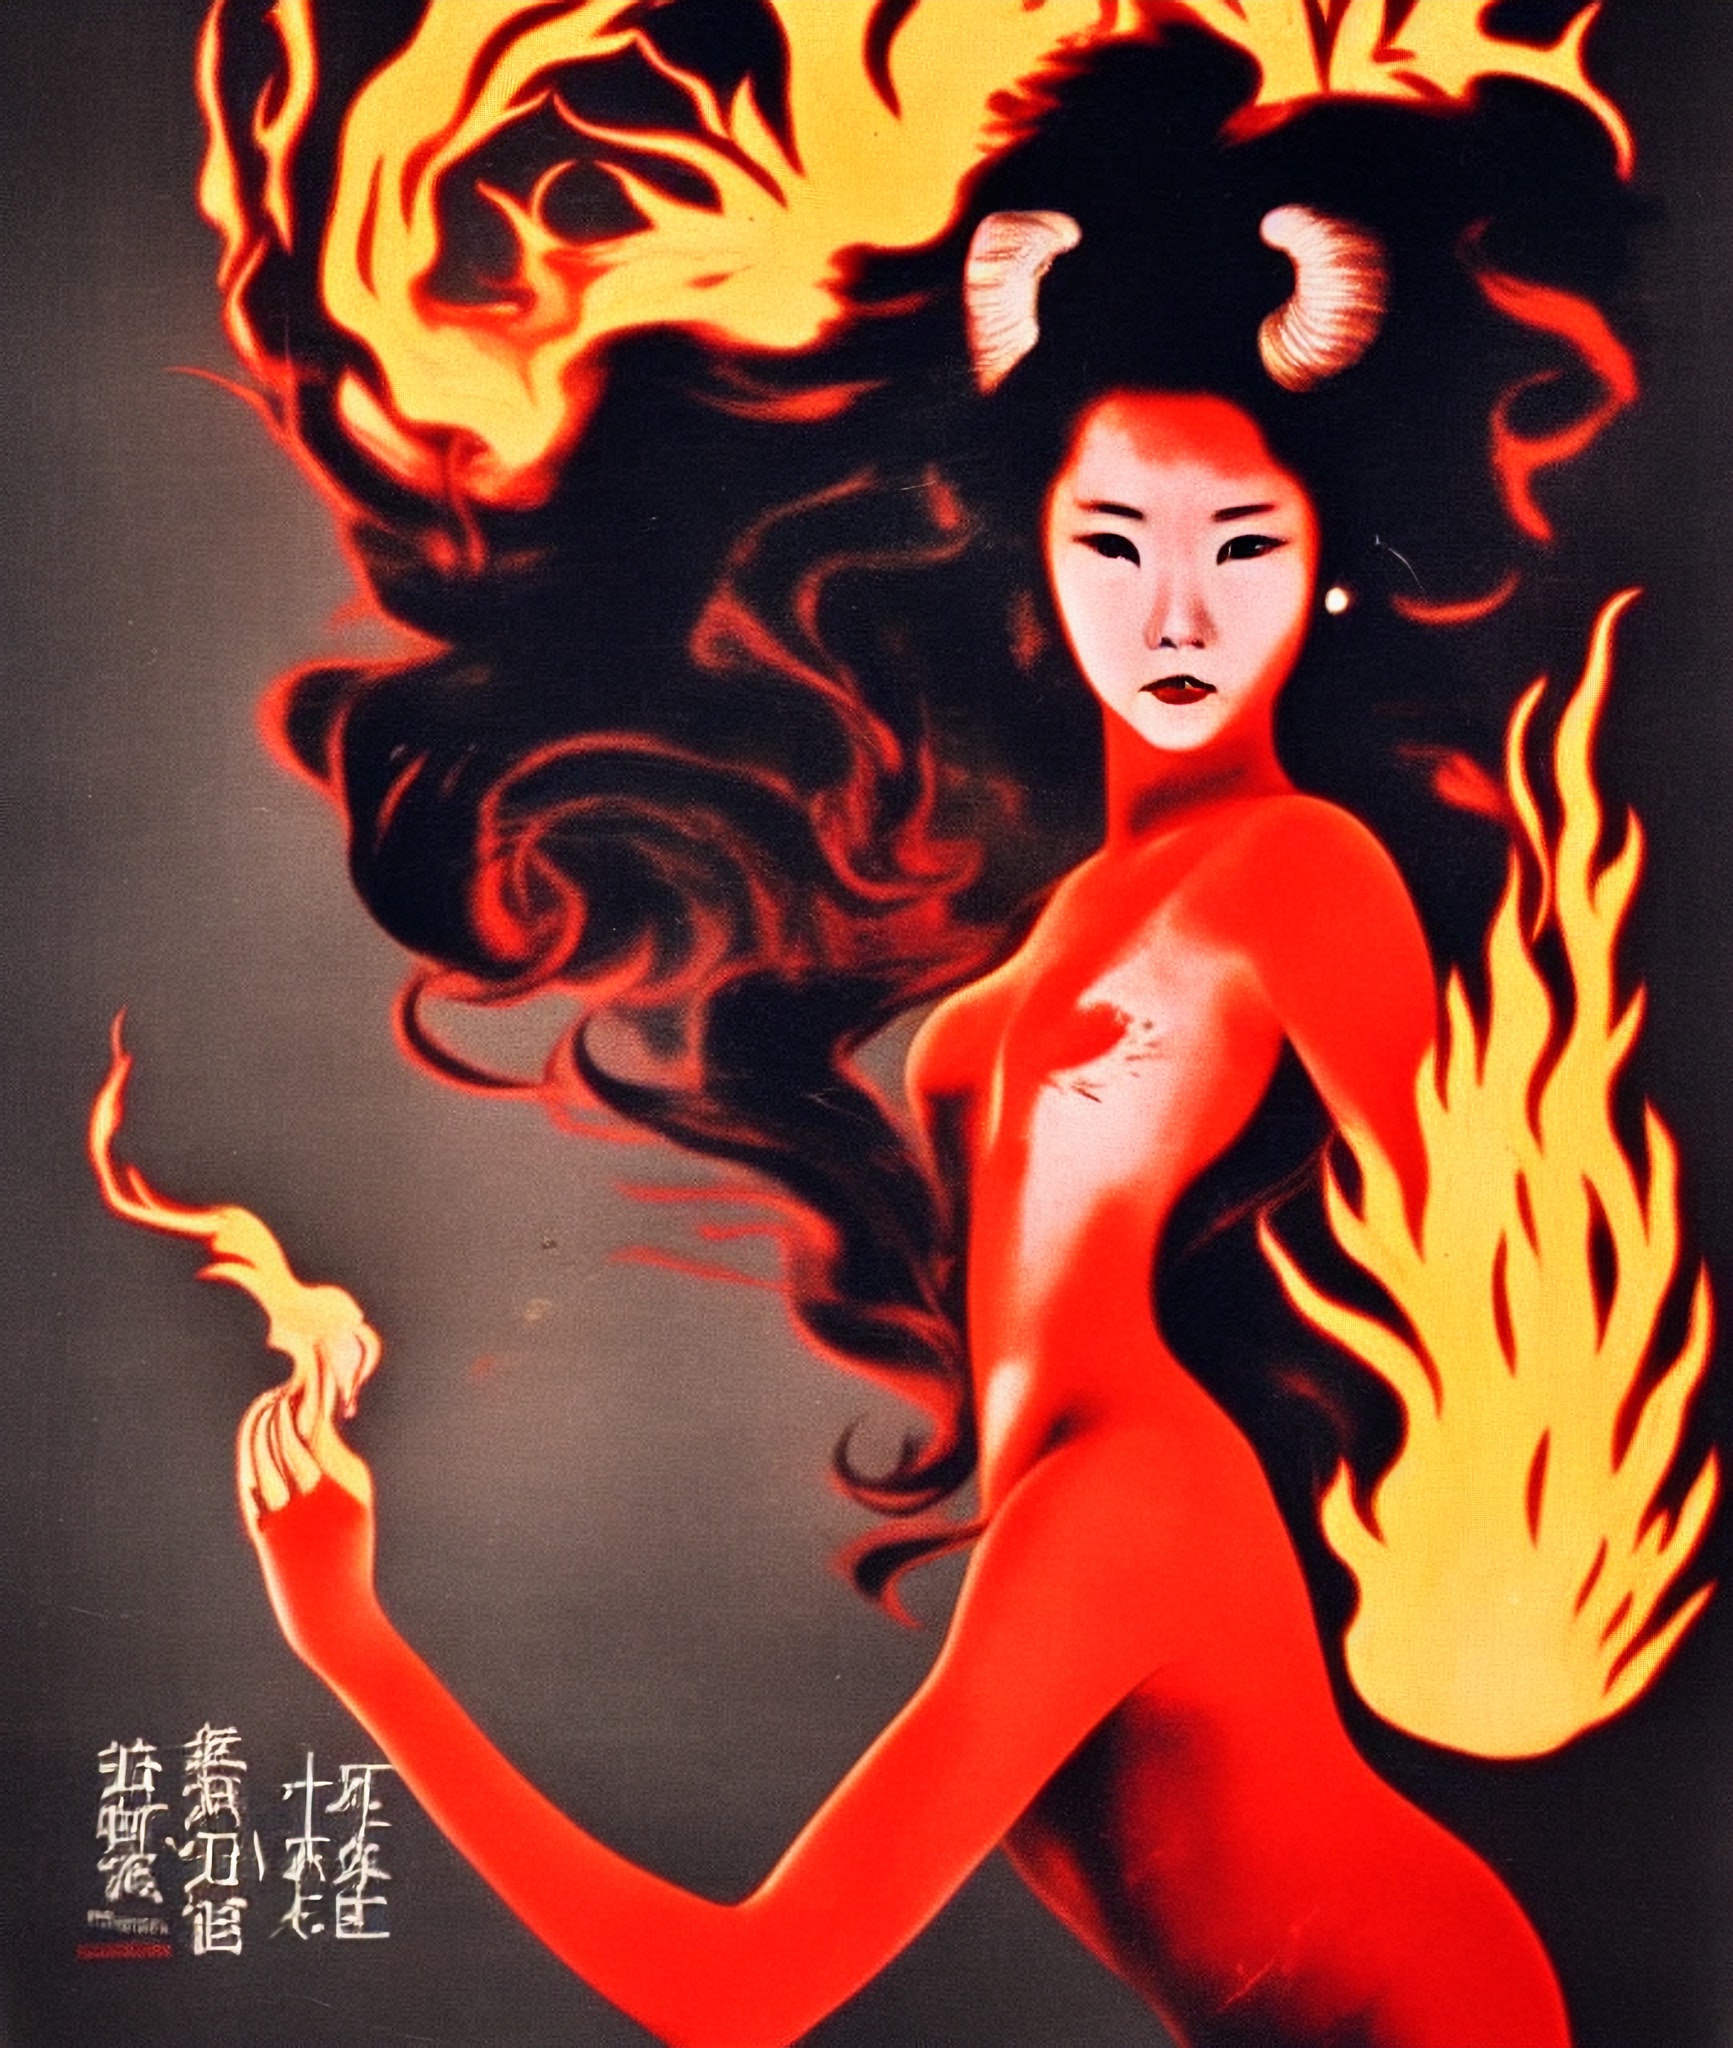 vintage-movie-poster-flames-girl-dragon-hongkong-6